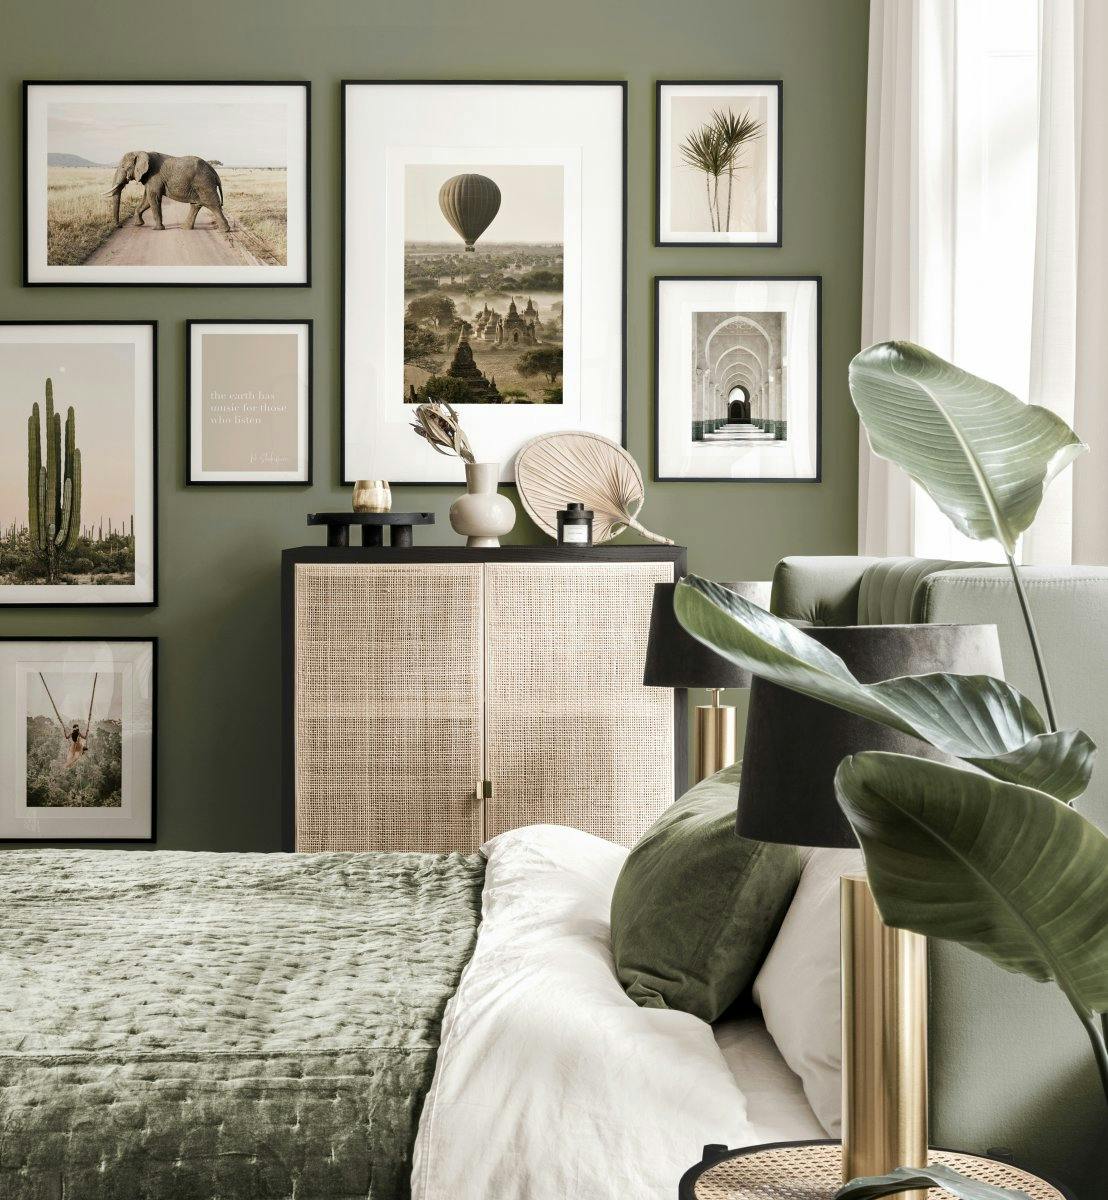 Mural de cuadros Safari interior verde pósters de fotografía marcos de madera negros